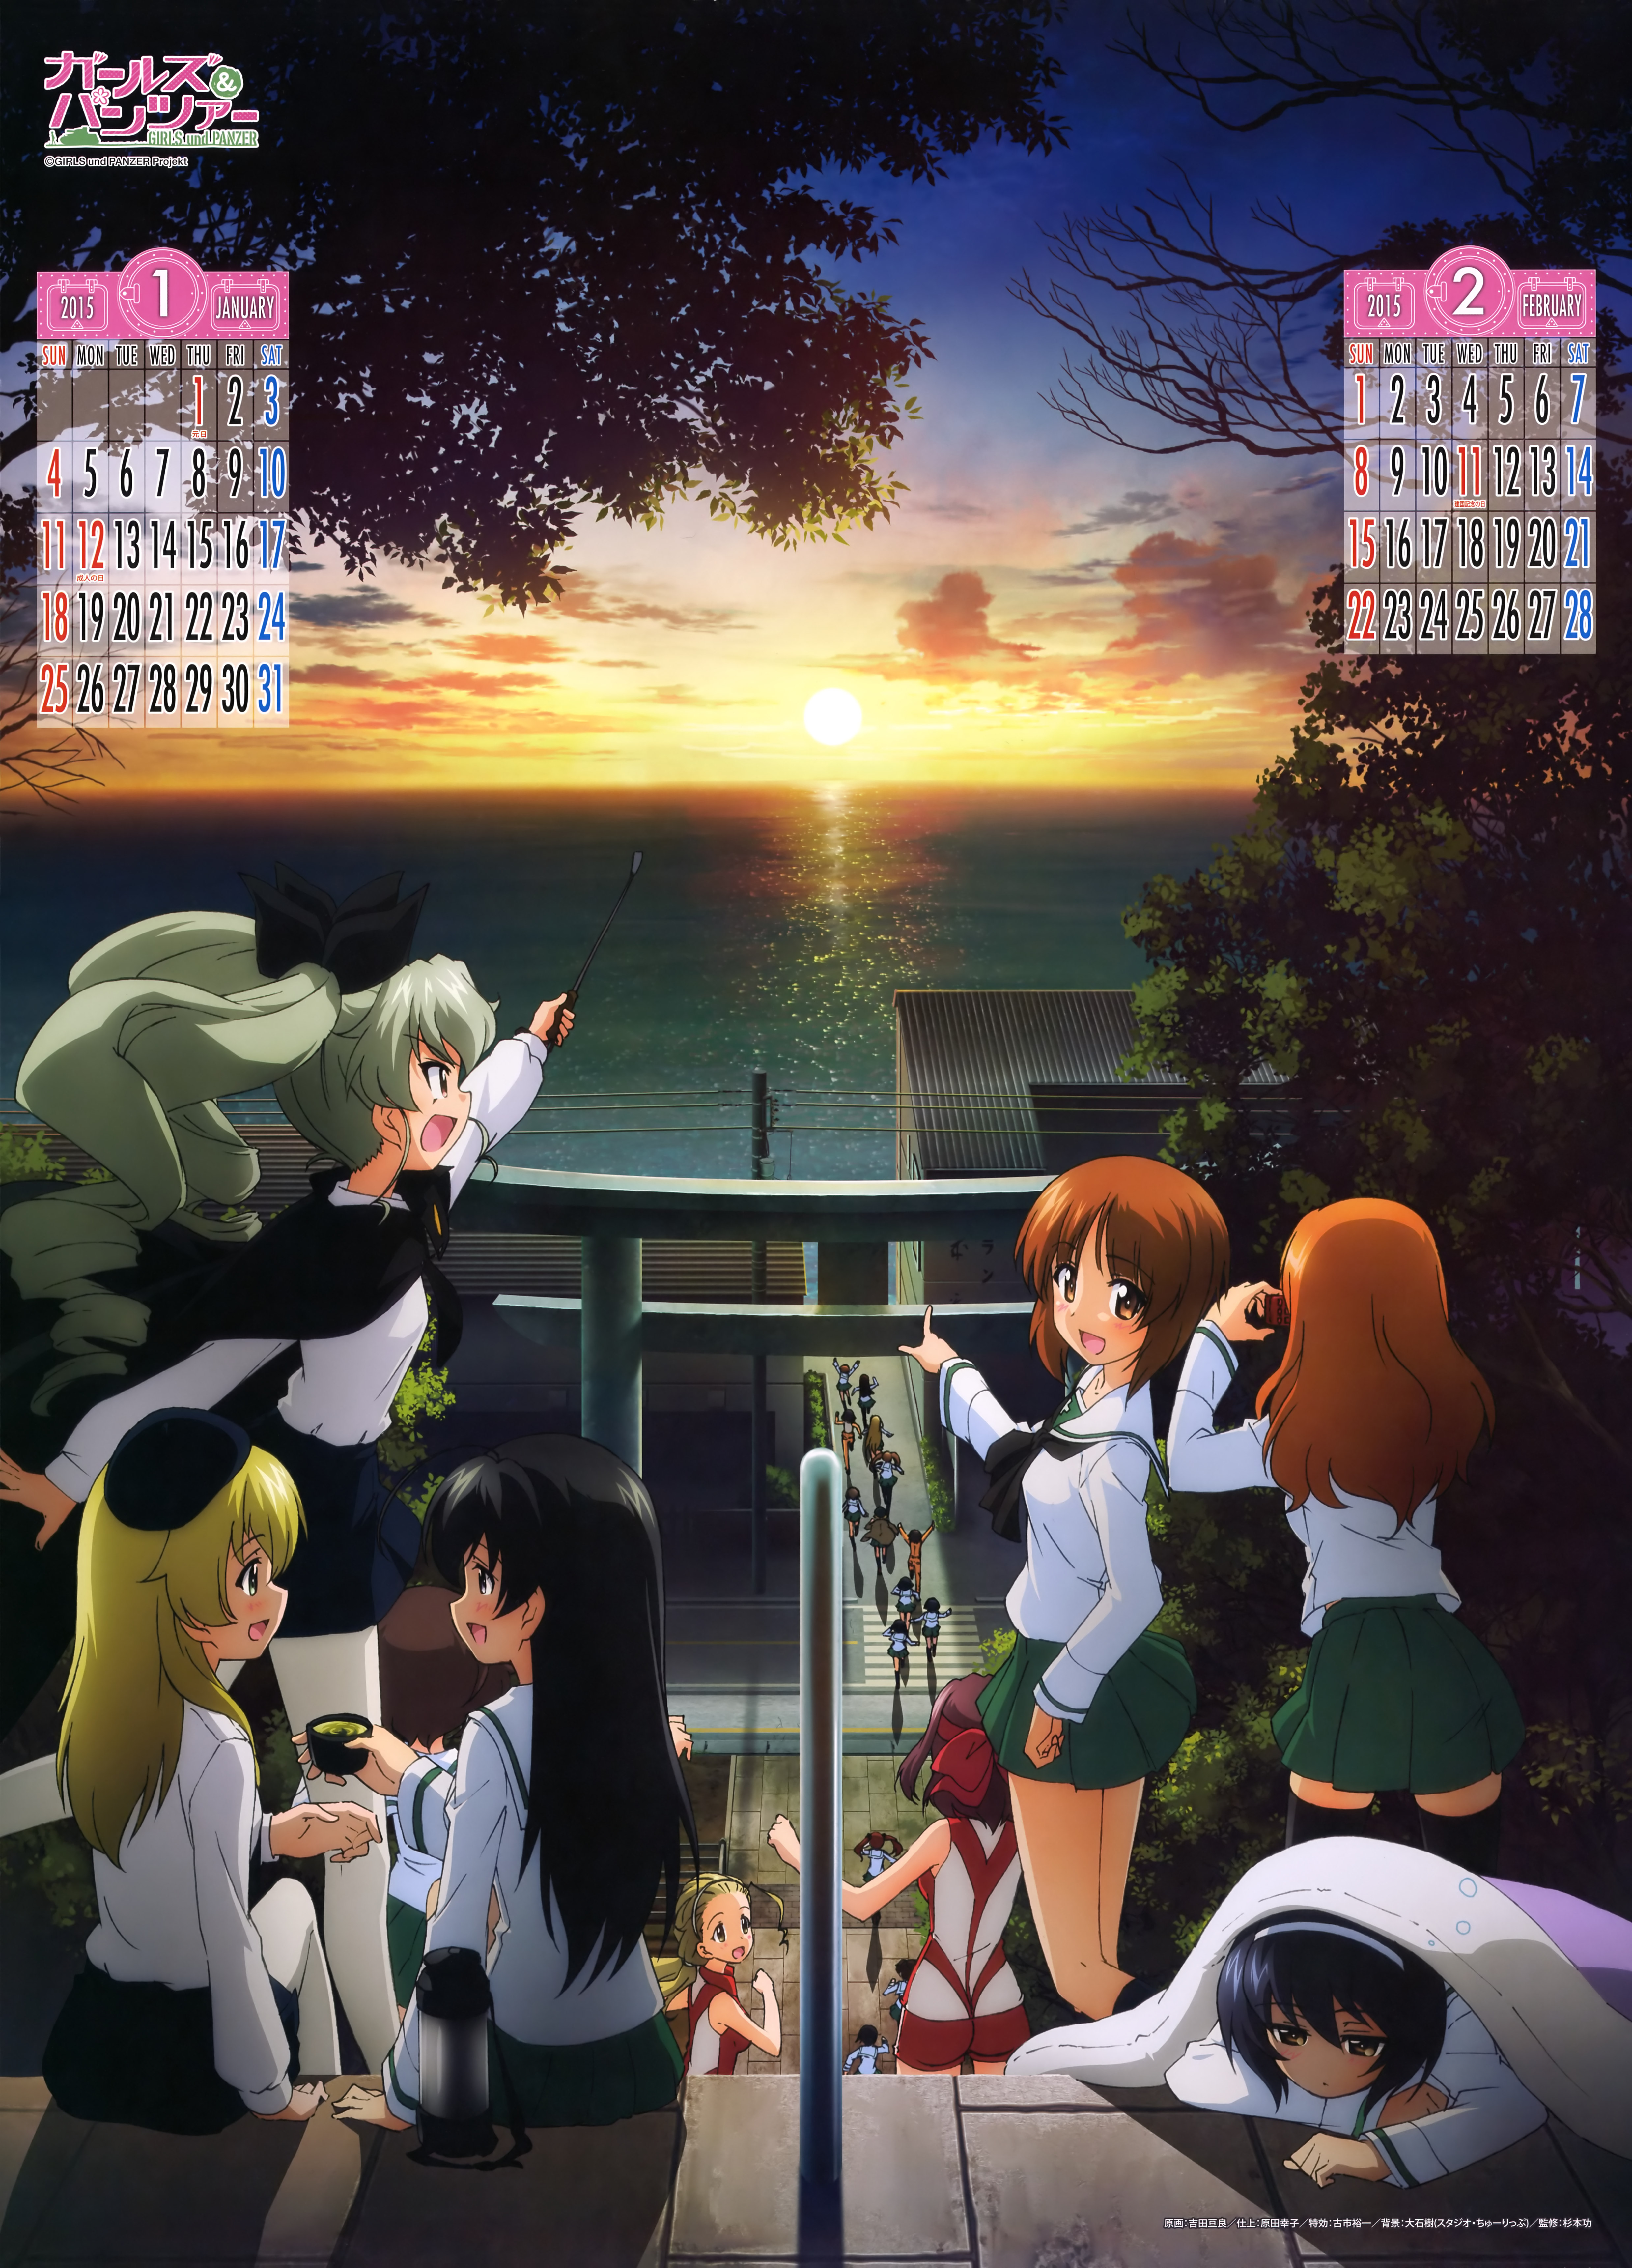 Girls und Panzer 2015 Calendar Previewed Haruhichan.com Gurapan calendar 2